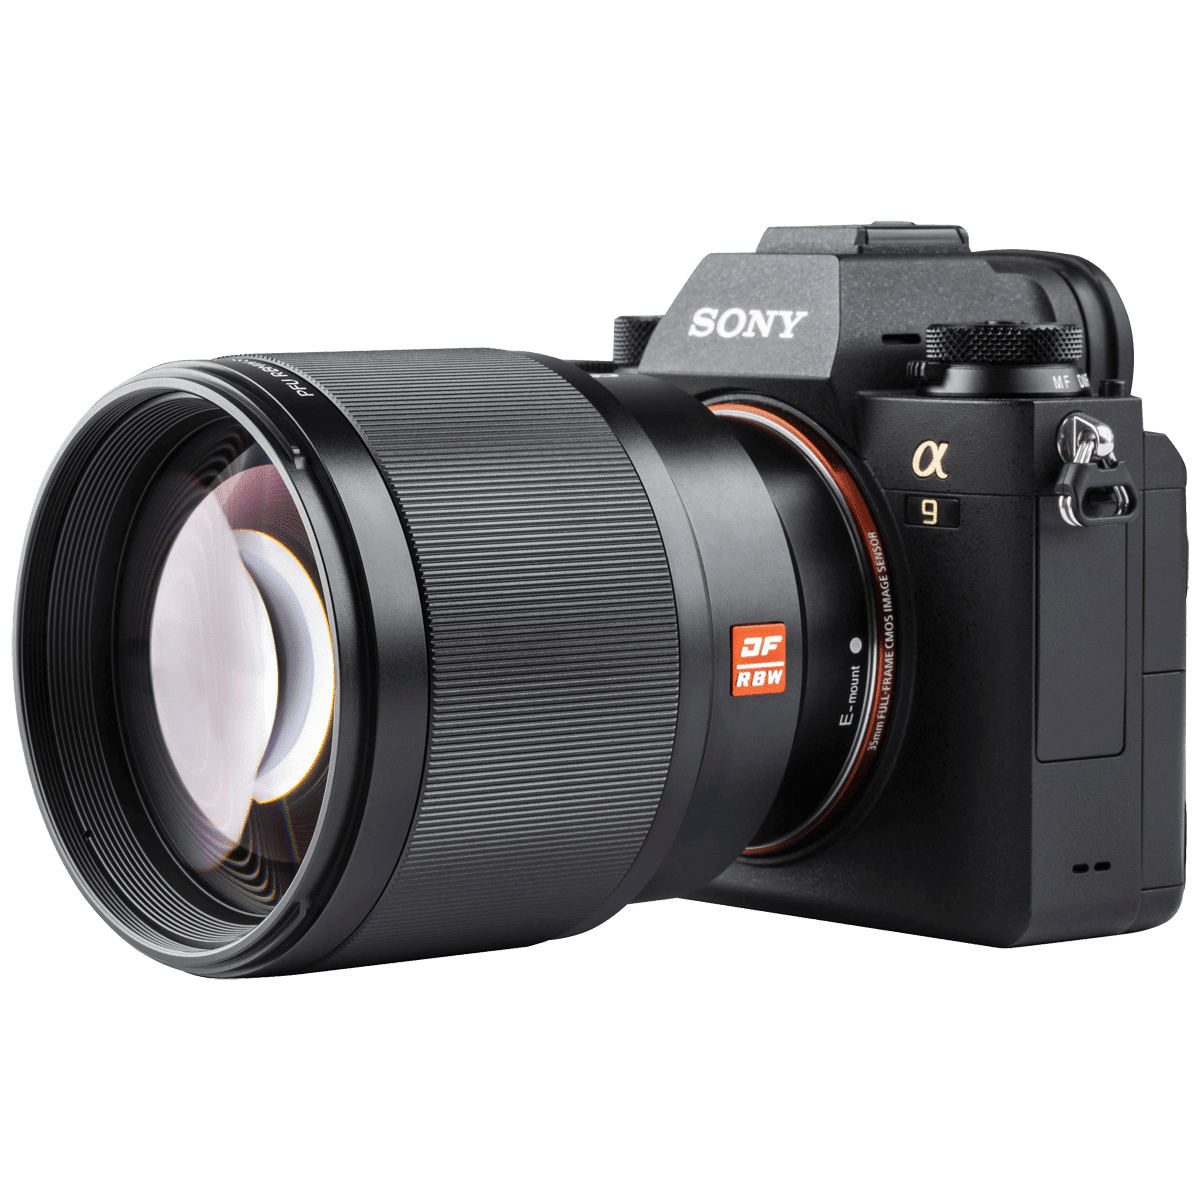 Портретный объектив Viltrox PFU RBMH 85mm f/1.8 STM на камере FE Sony A9 - вид сбоку png